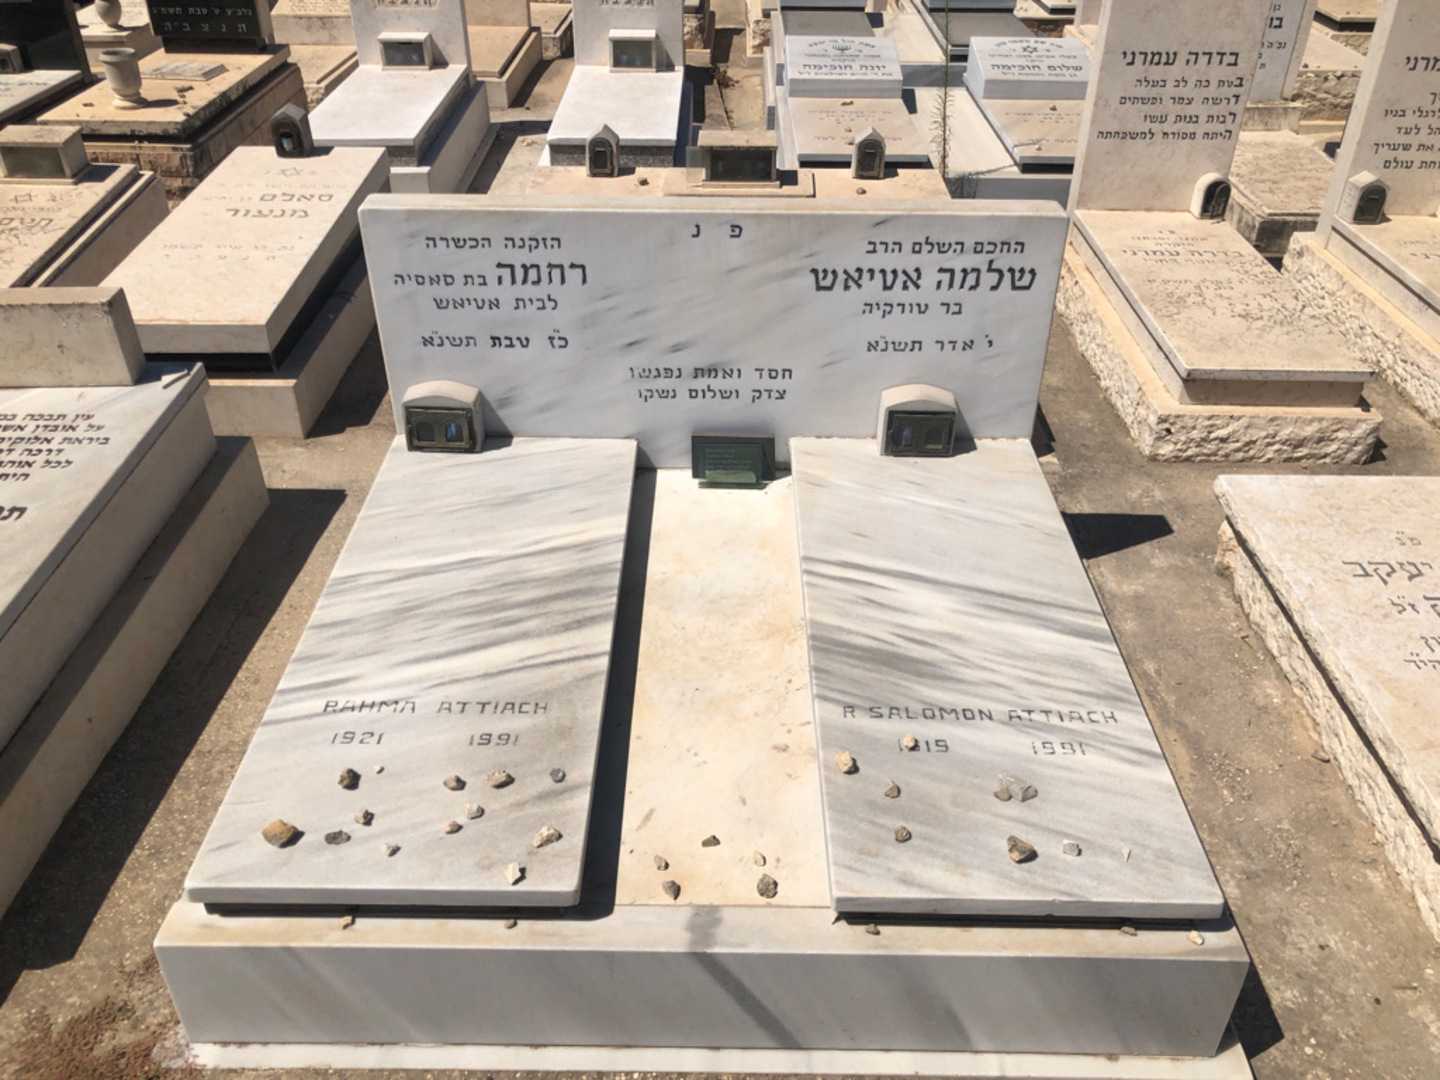 קברו של רחמה אטיאש. תמונה 2